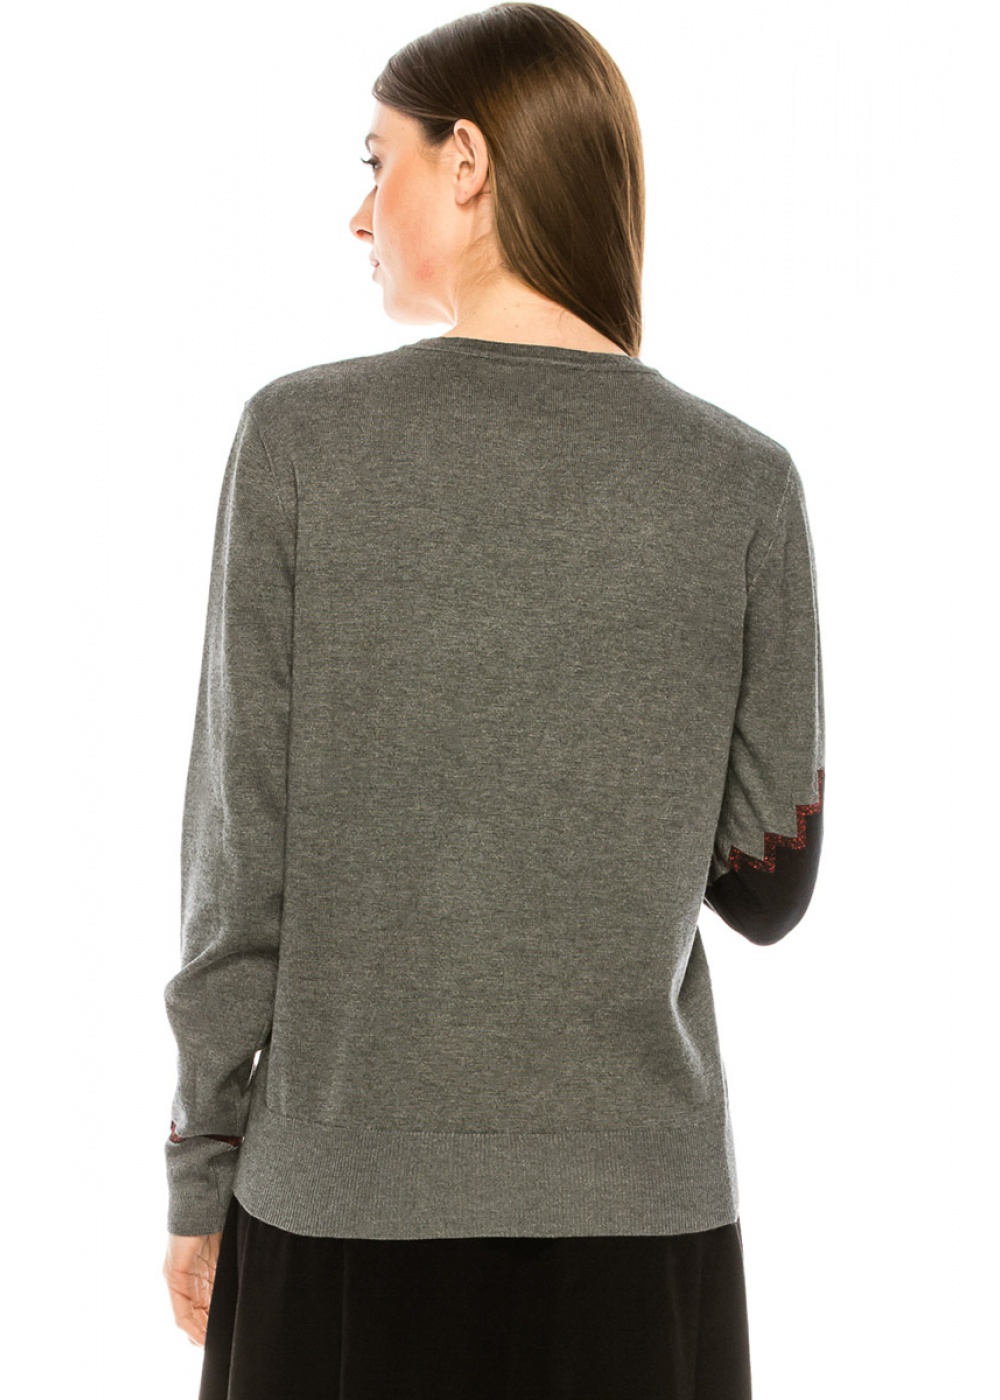 Diagonal print sweater in grey